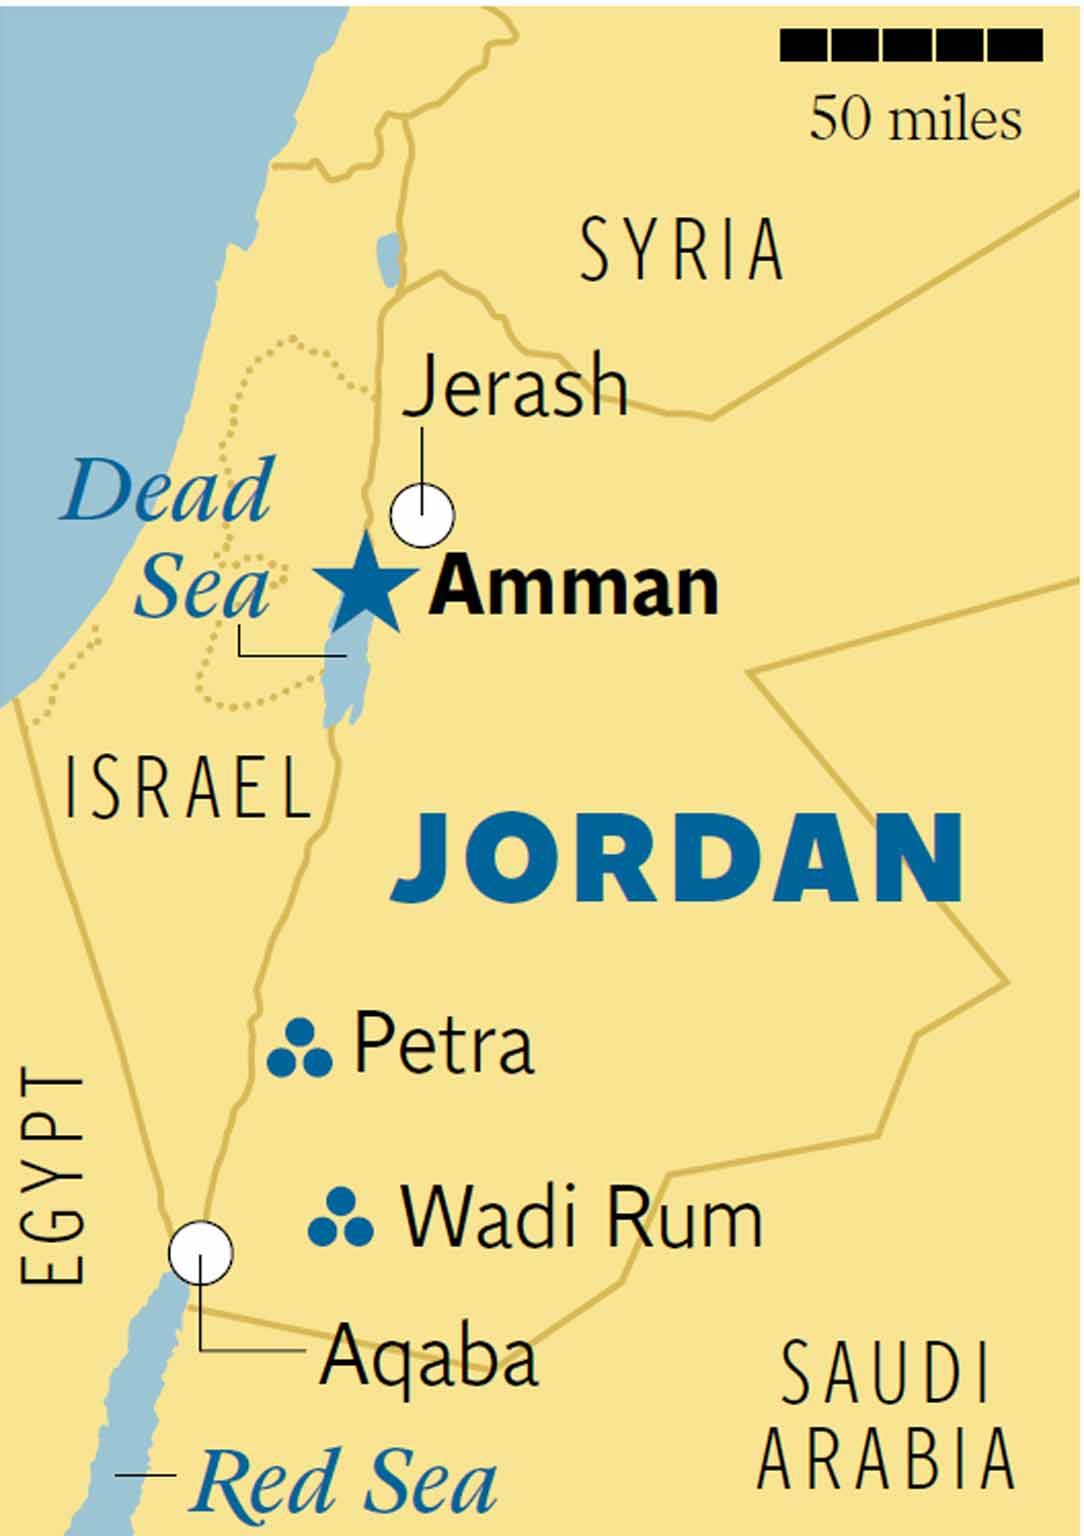 jordan tour packages from saudi arabia